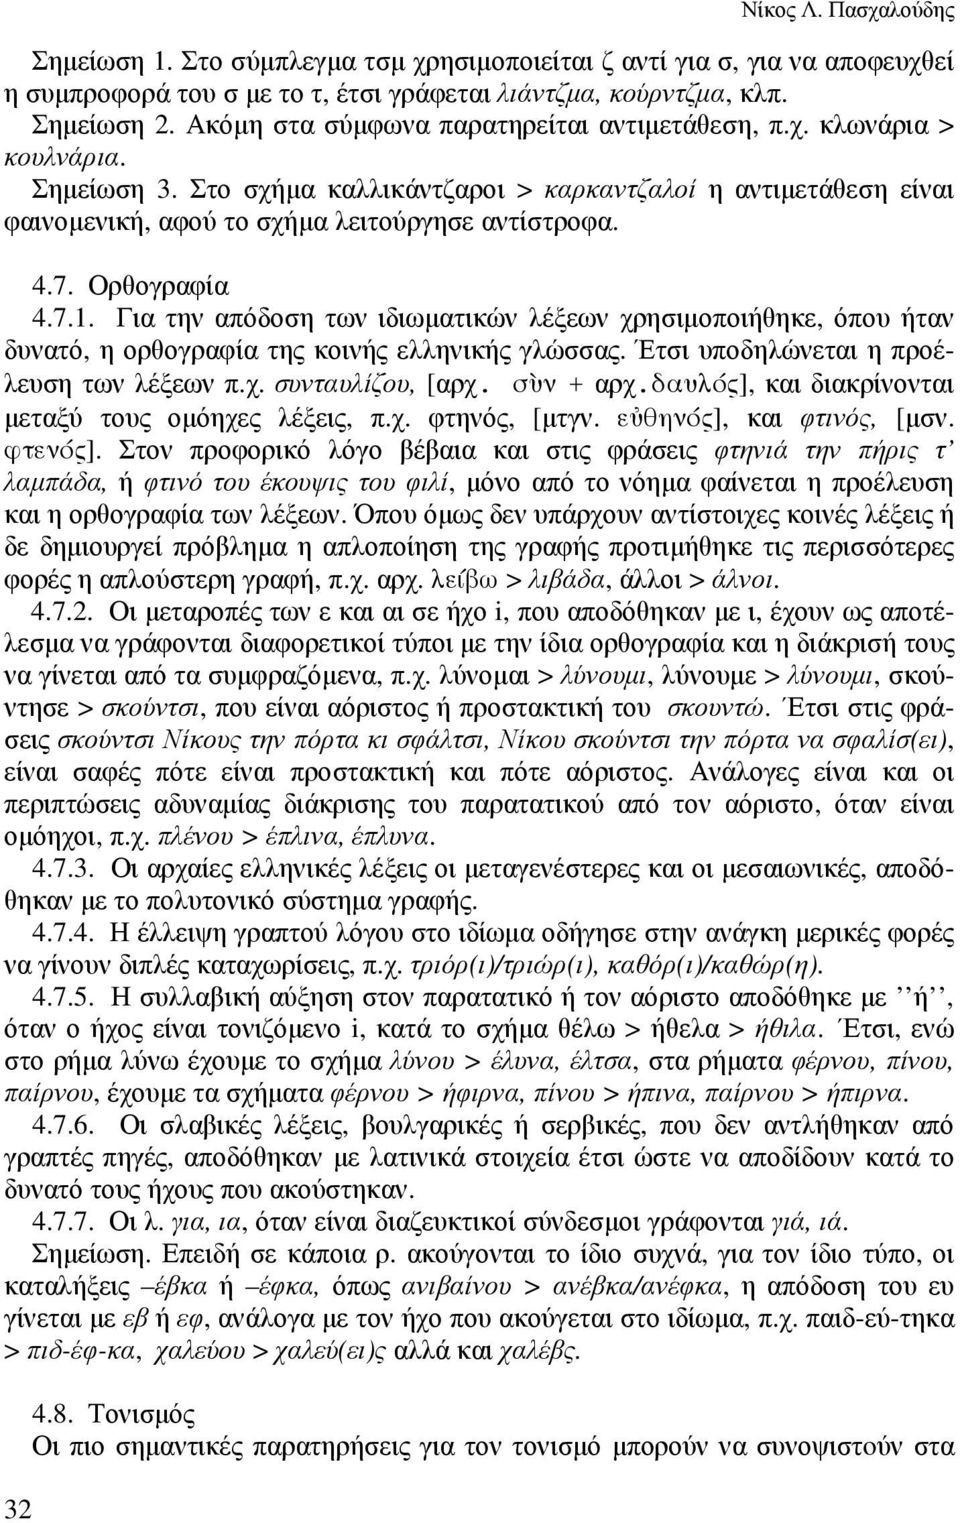 Ορθογραφία 4.7.1. Για την απόδοση των ιδιωµατικών λέξεων χρησιµοποιήθηκε, όπου ήταν δυνατό, η ορθογραφία της κοινής ελληνικής γλώσσας. Έτσι υποδηλώνεται η προέλευση των λέξεων π.χ. συνταυλίζου, [αρχ.